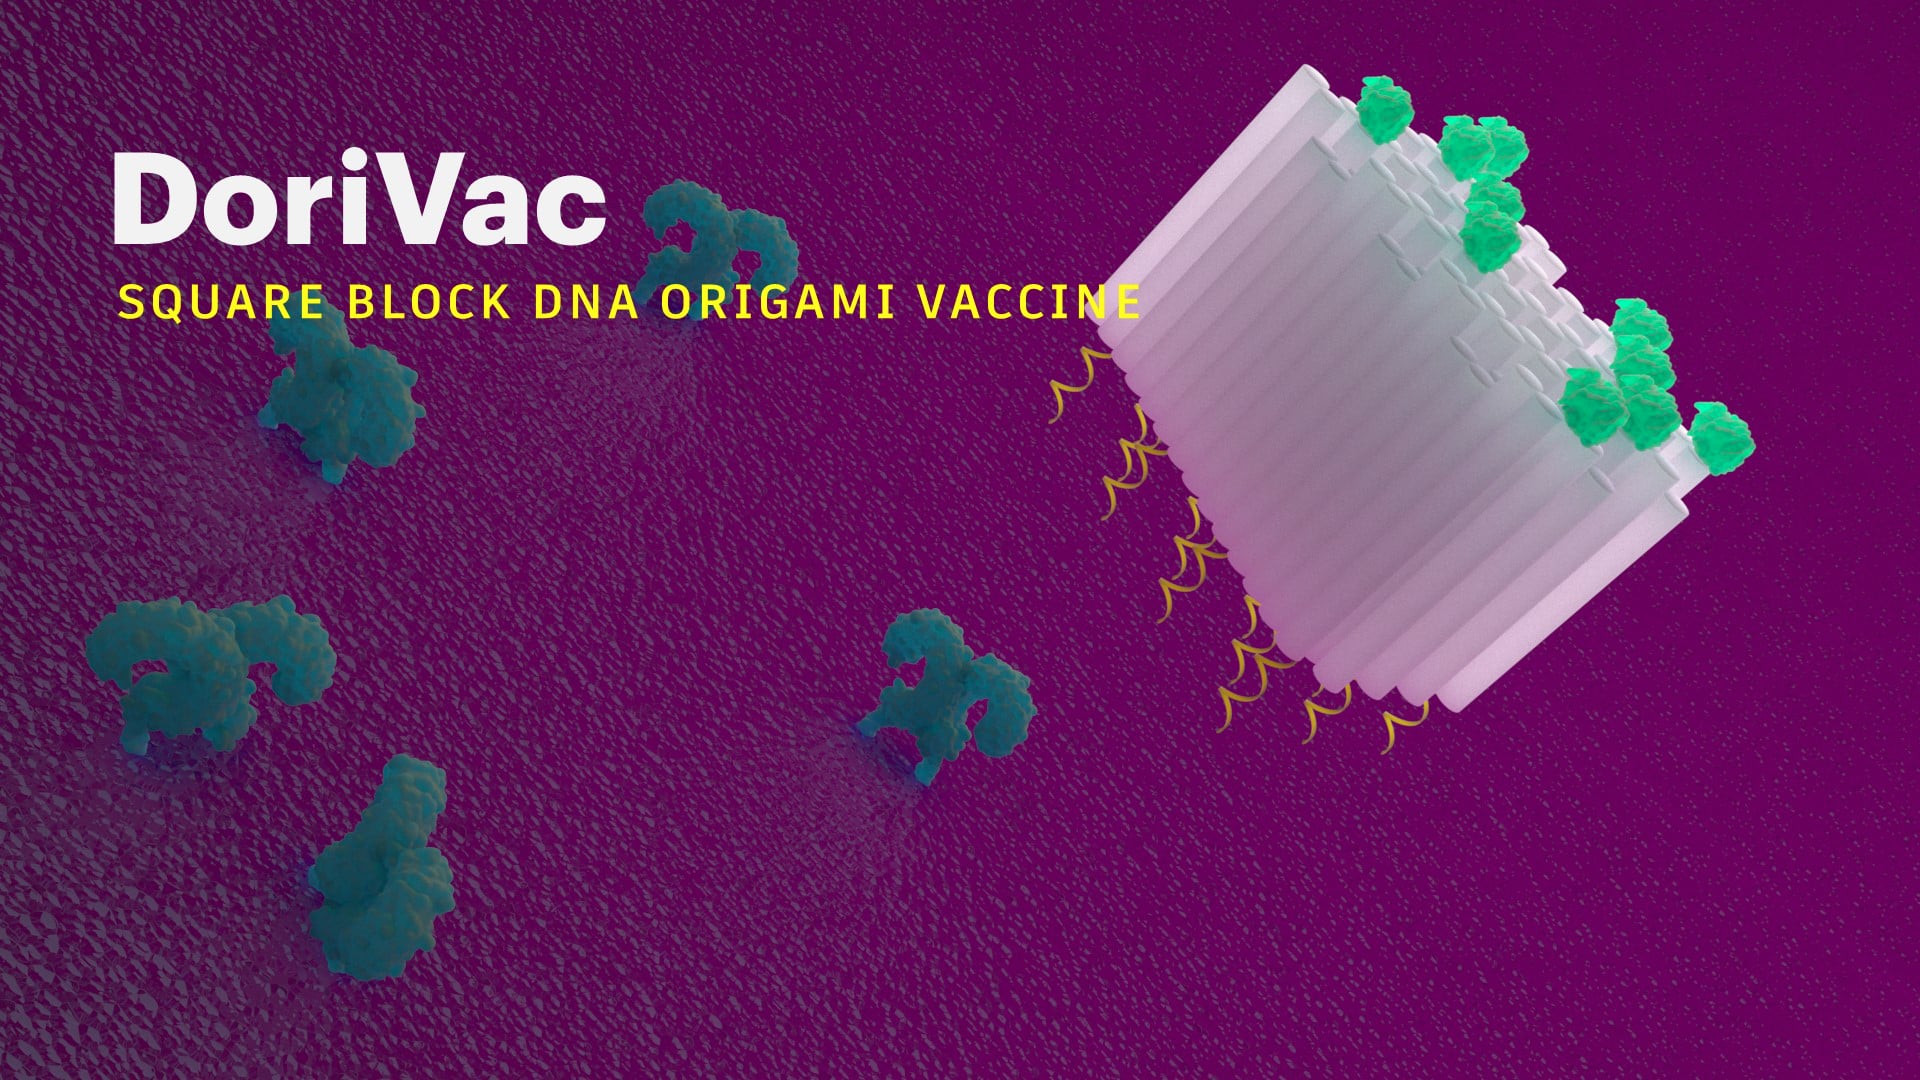 DoriVac-Square Block DNA Origami Vaccine.mp4